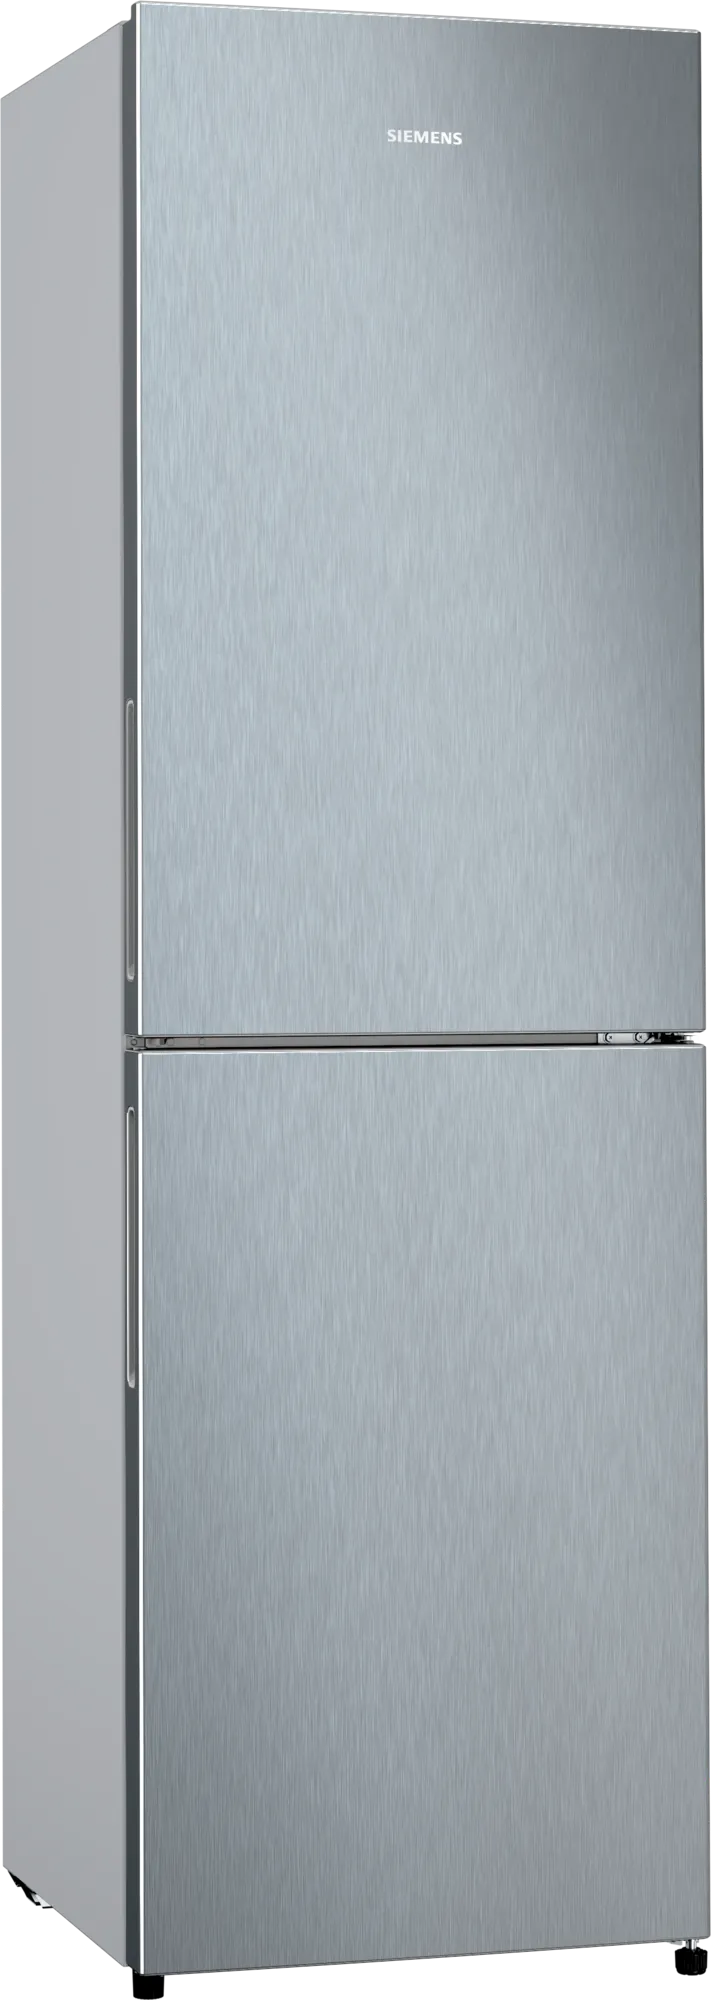 西門子| KG27NNLEAG 254公升iQ100 下層冷凍式雙門雪櫃| HKTVmall 香港 